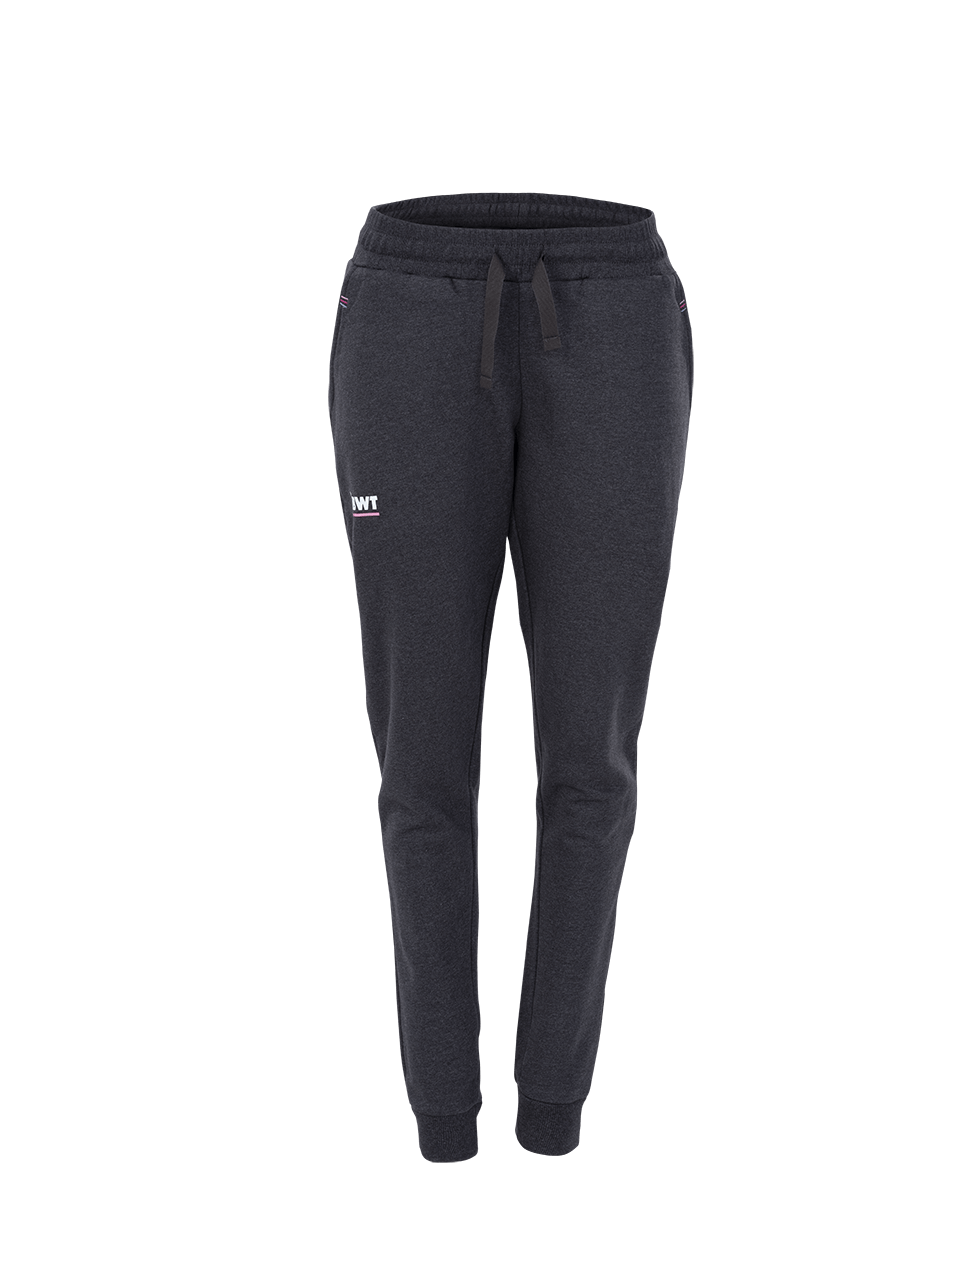 Pantalon de jogging femme gris